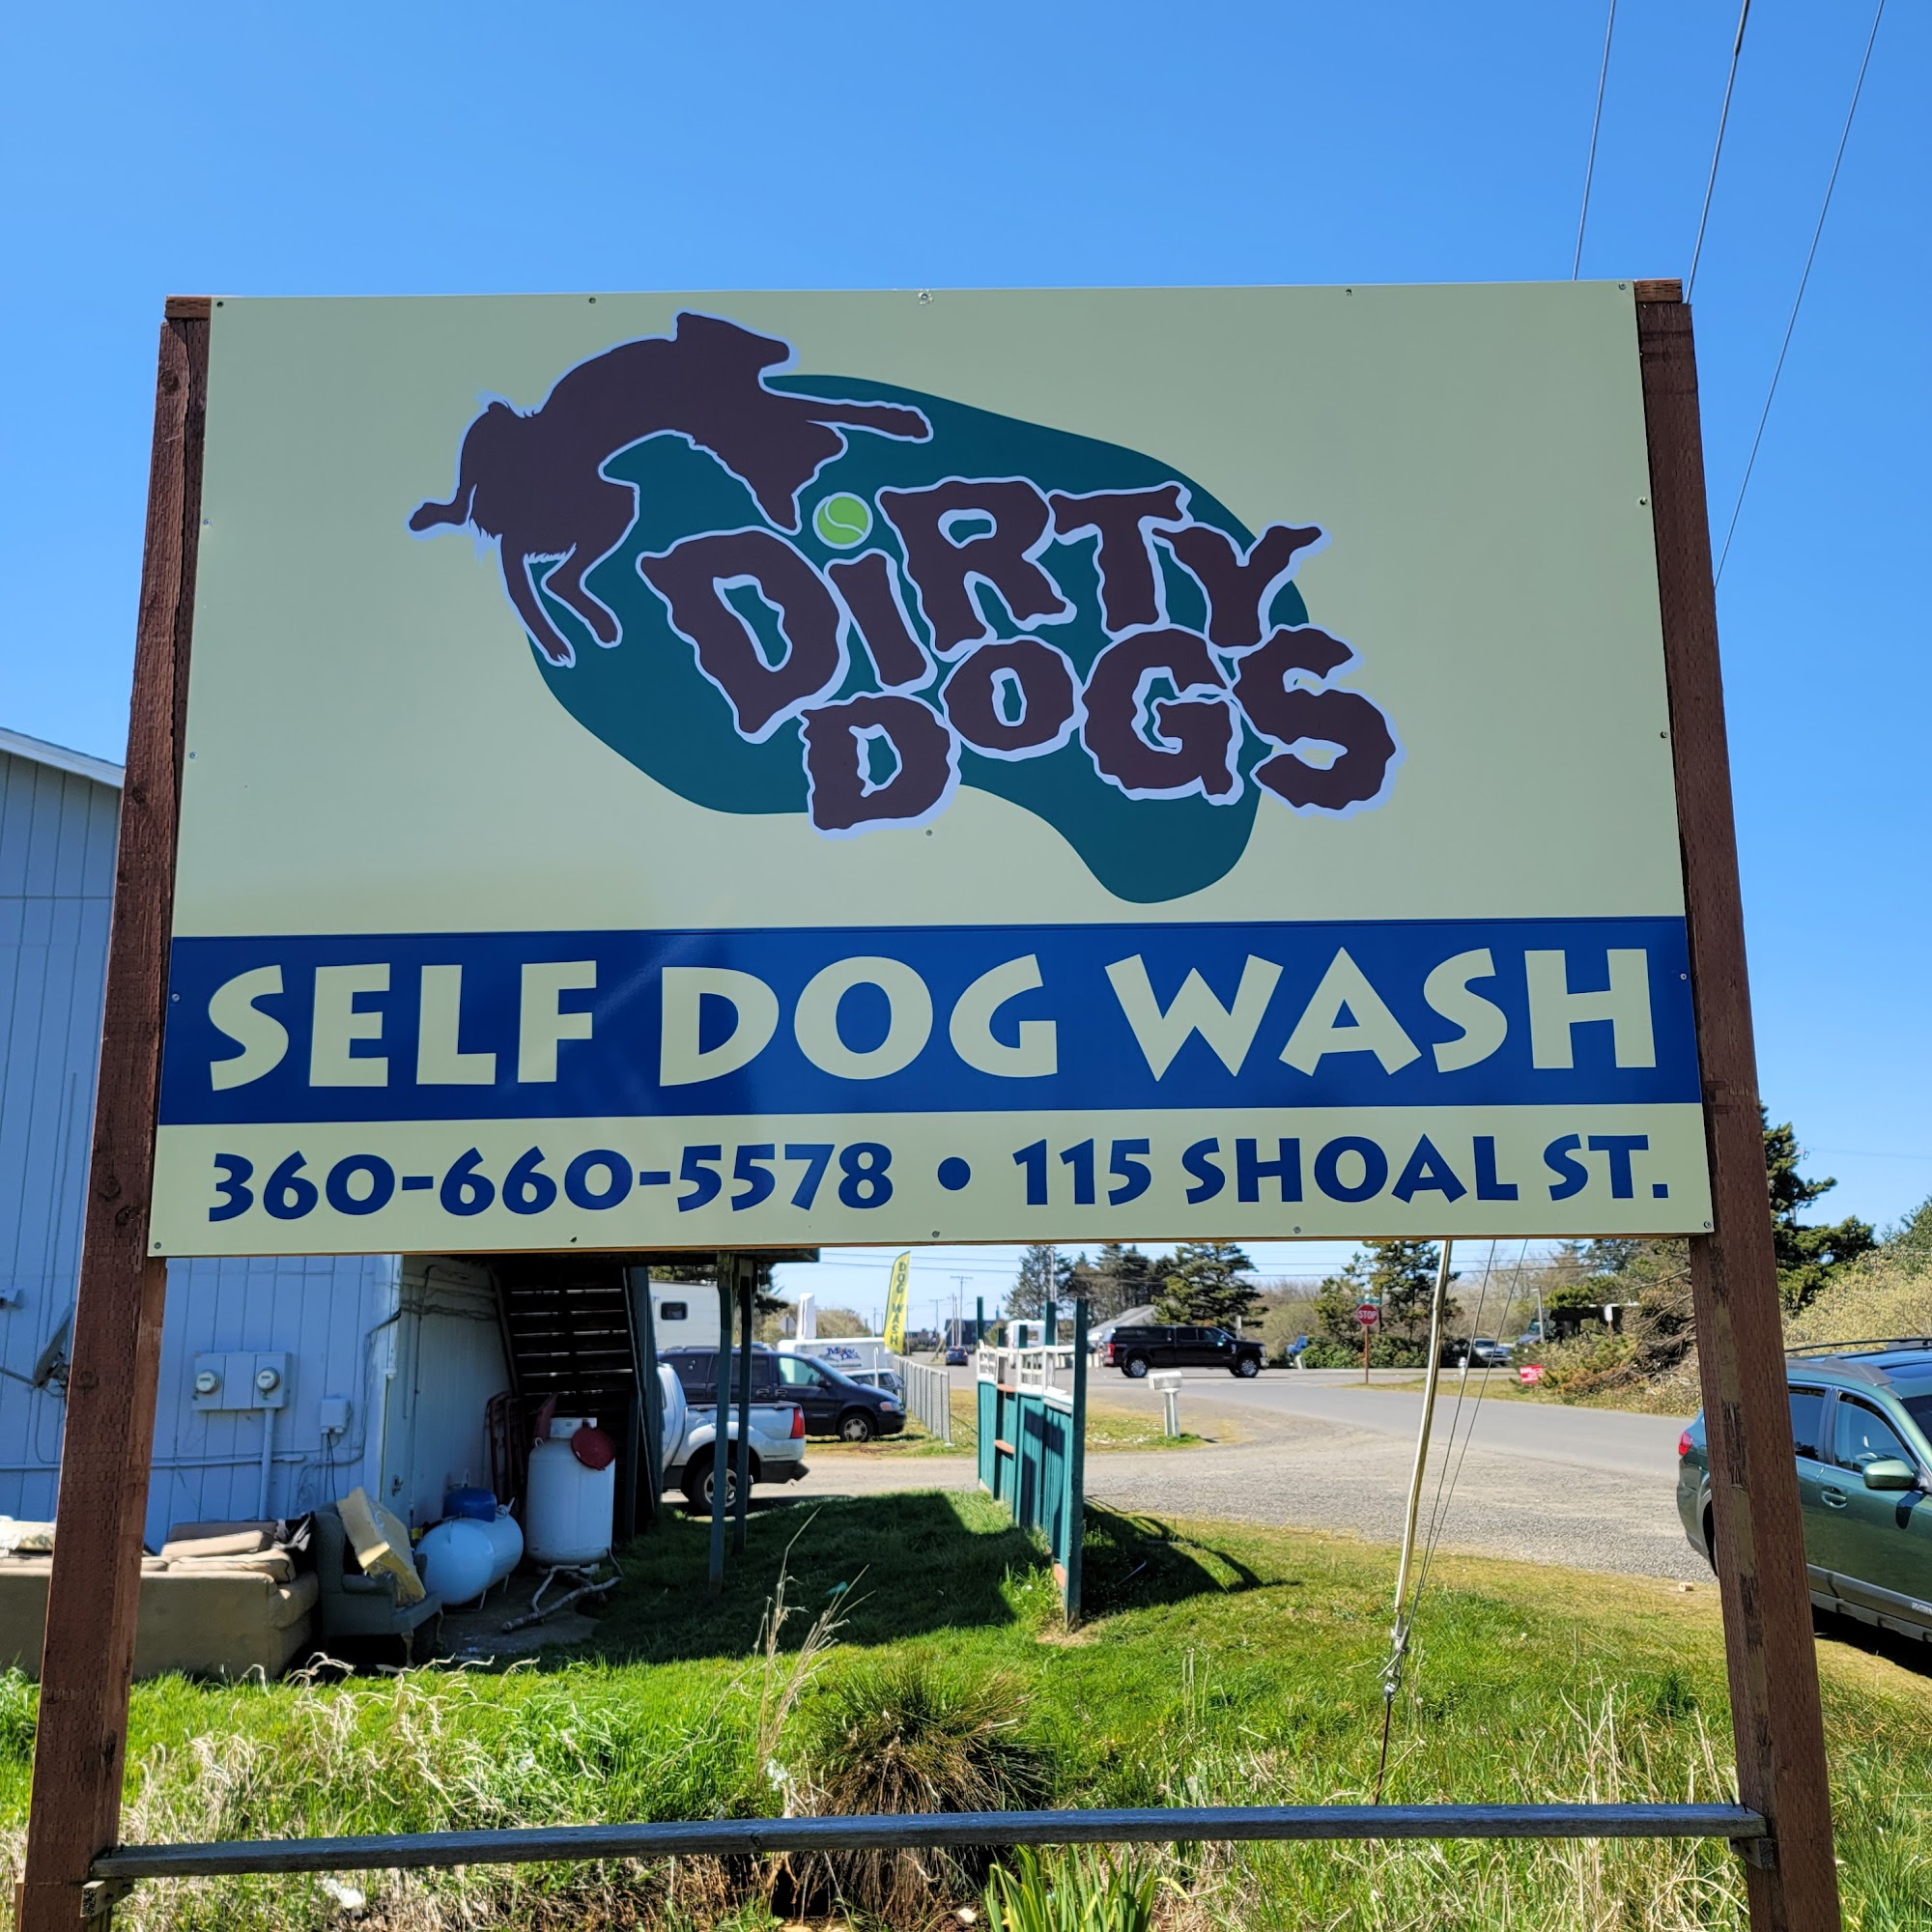 Dirty Dogs Dog wash 780 Seahorse Ave NE, Ocean Shores Washington 98569